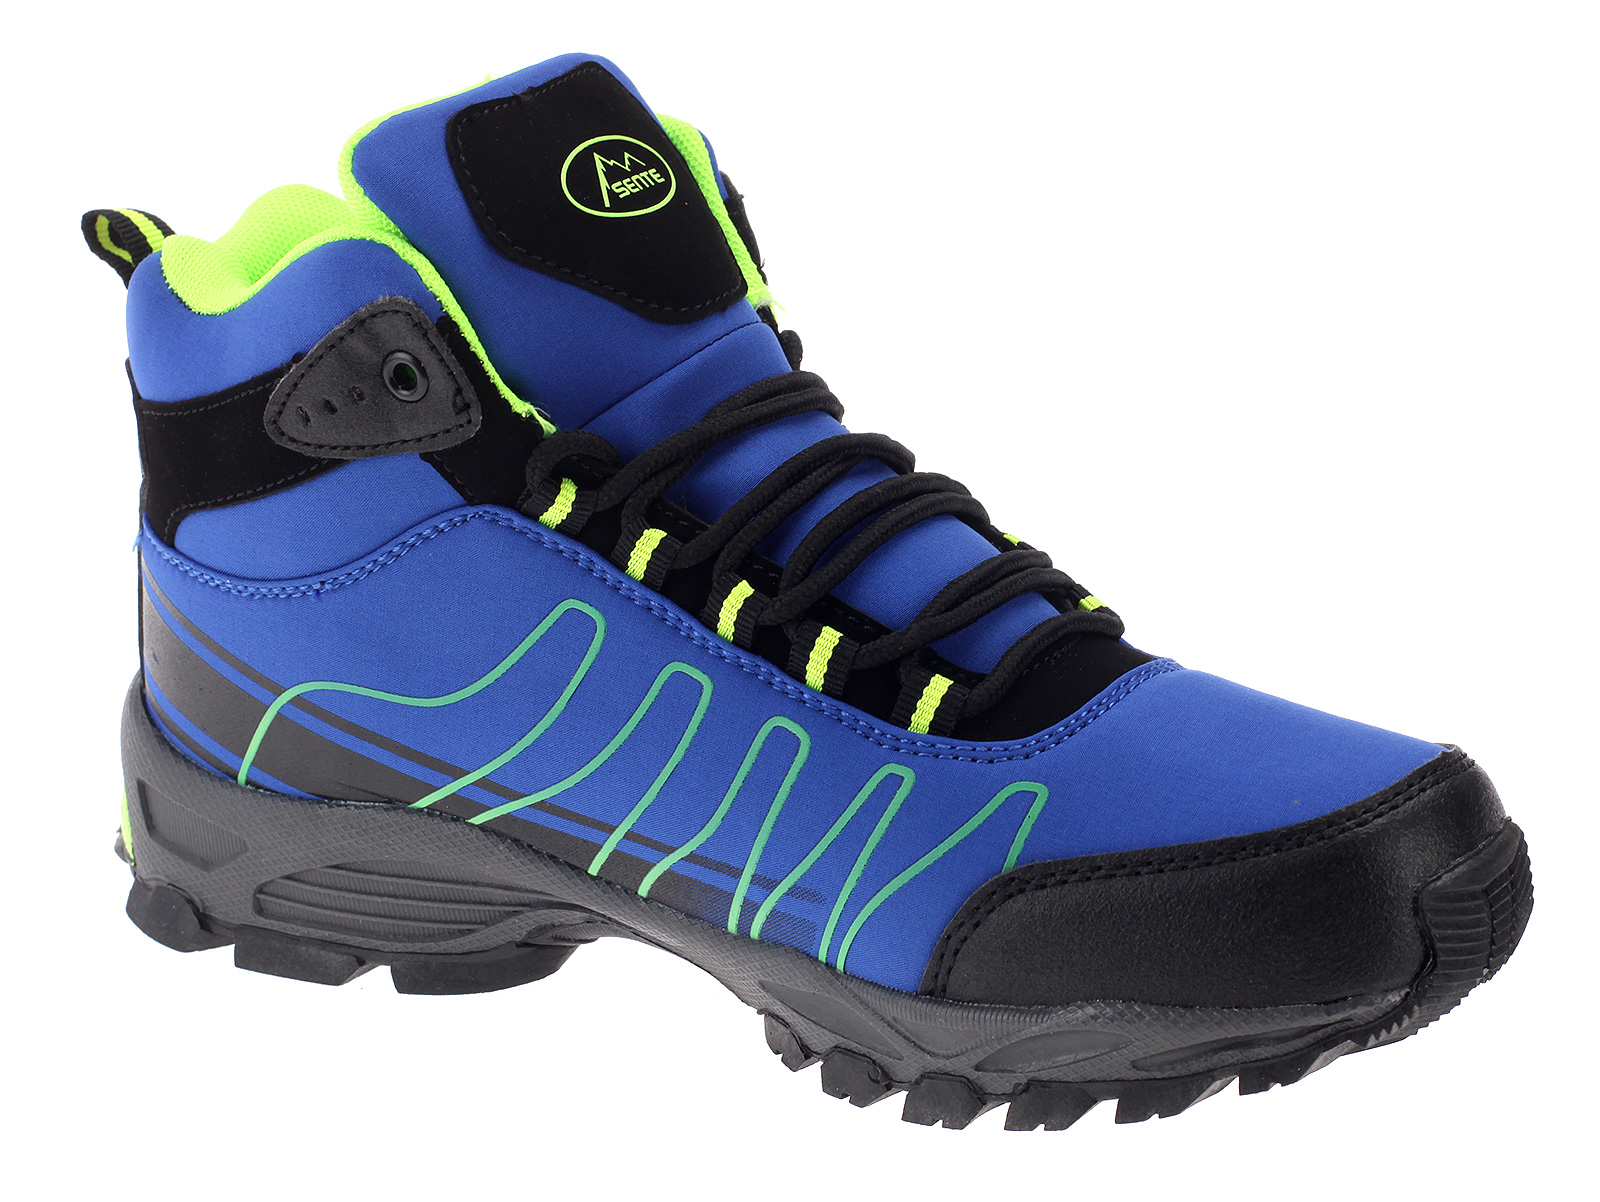 Wanderschuhe Outdoor Stiefel Trekkingschuhe Boots Freizeit Sneaker Schuhe 1530